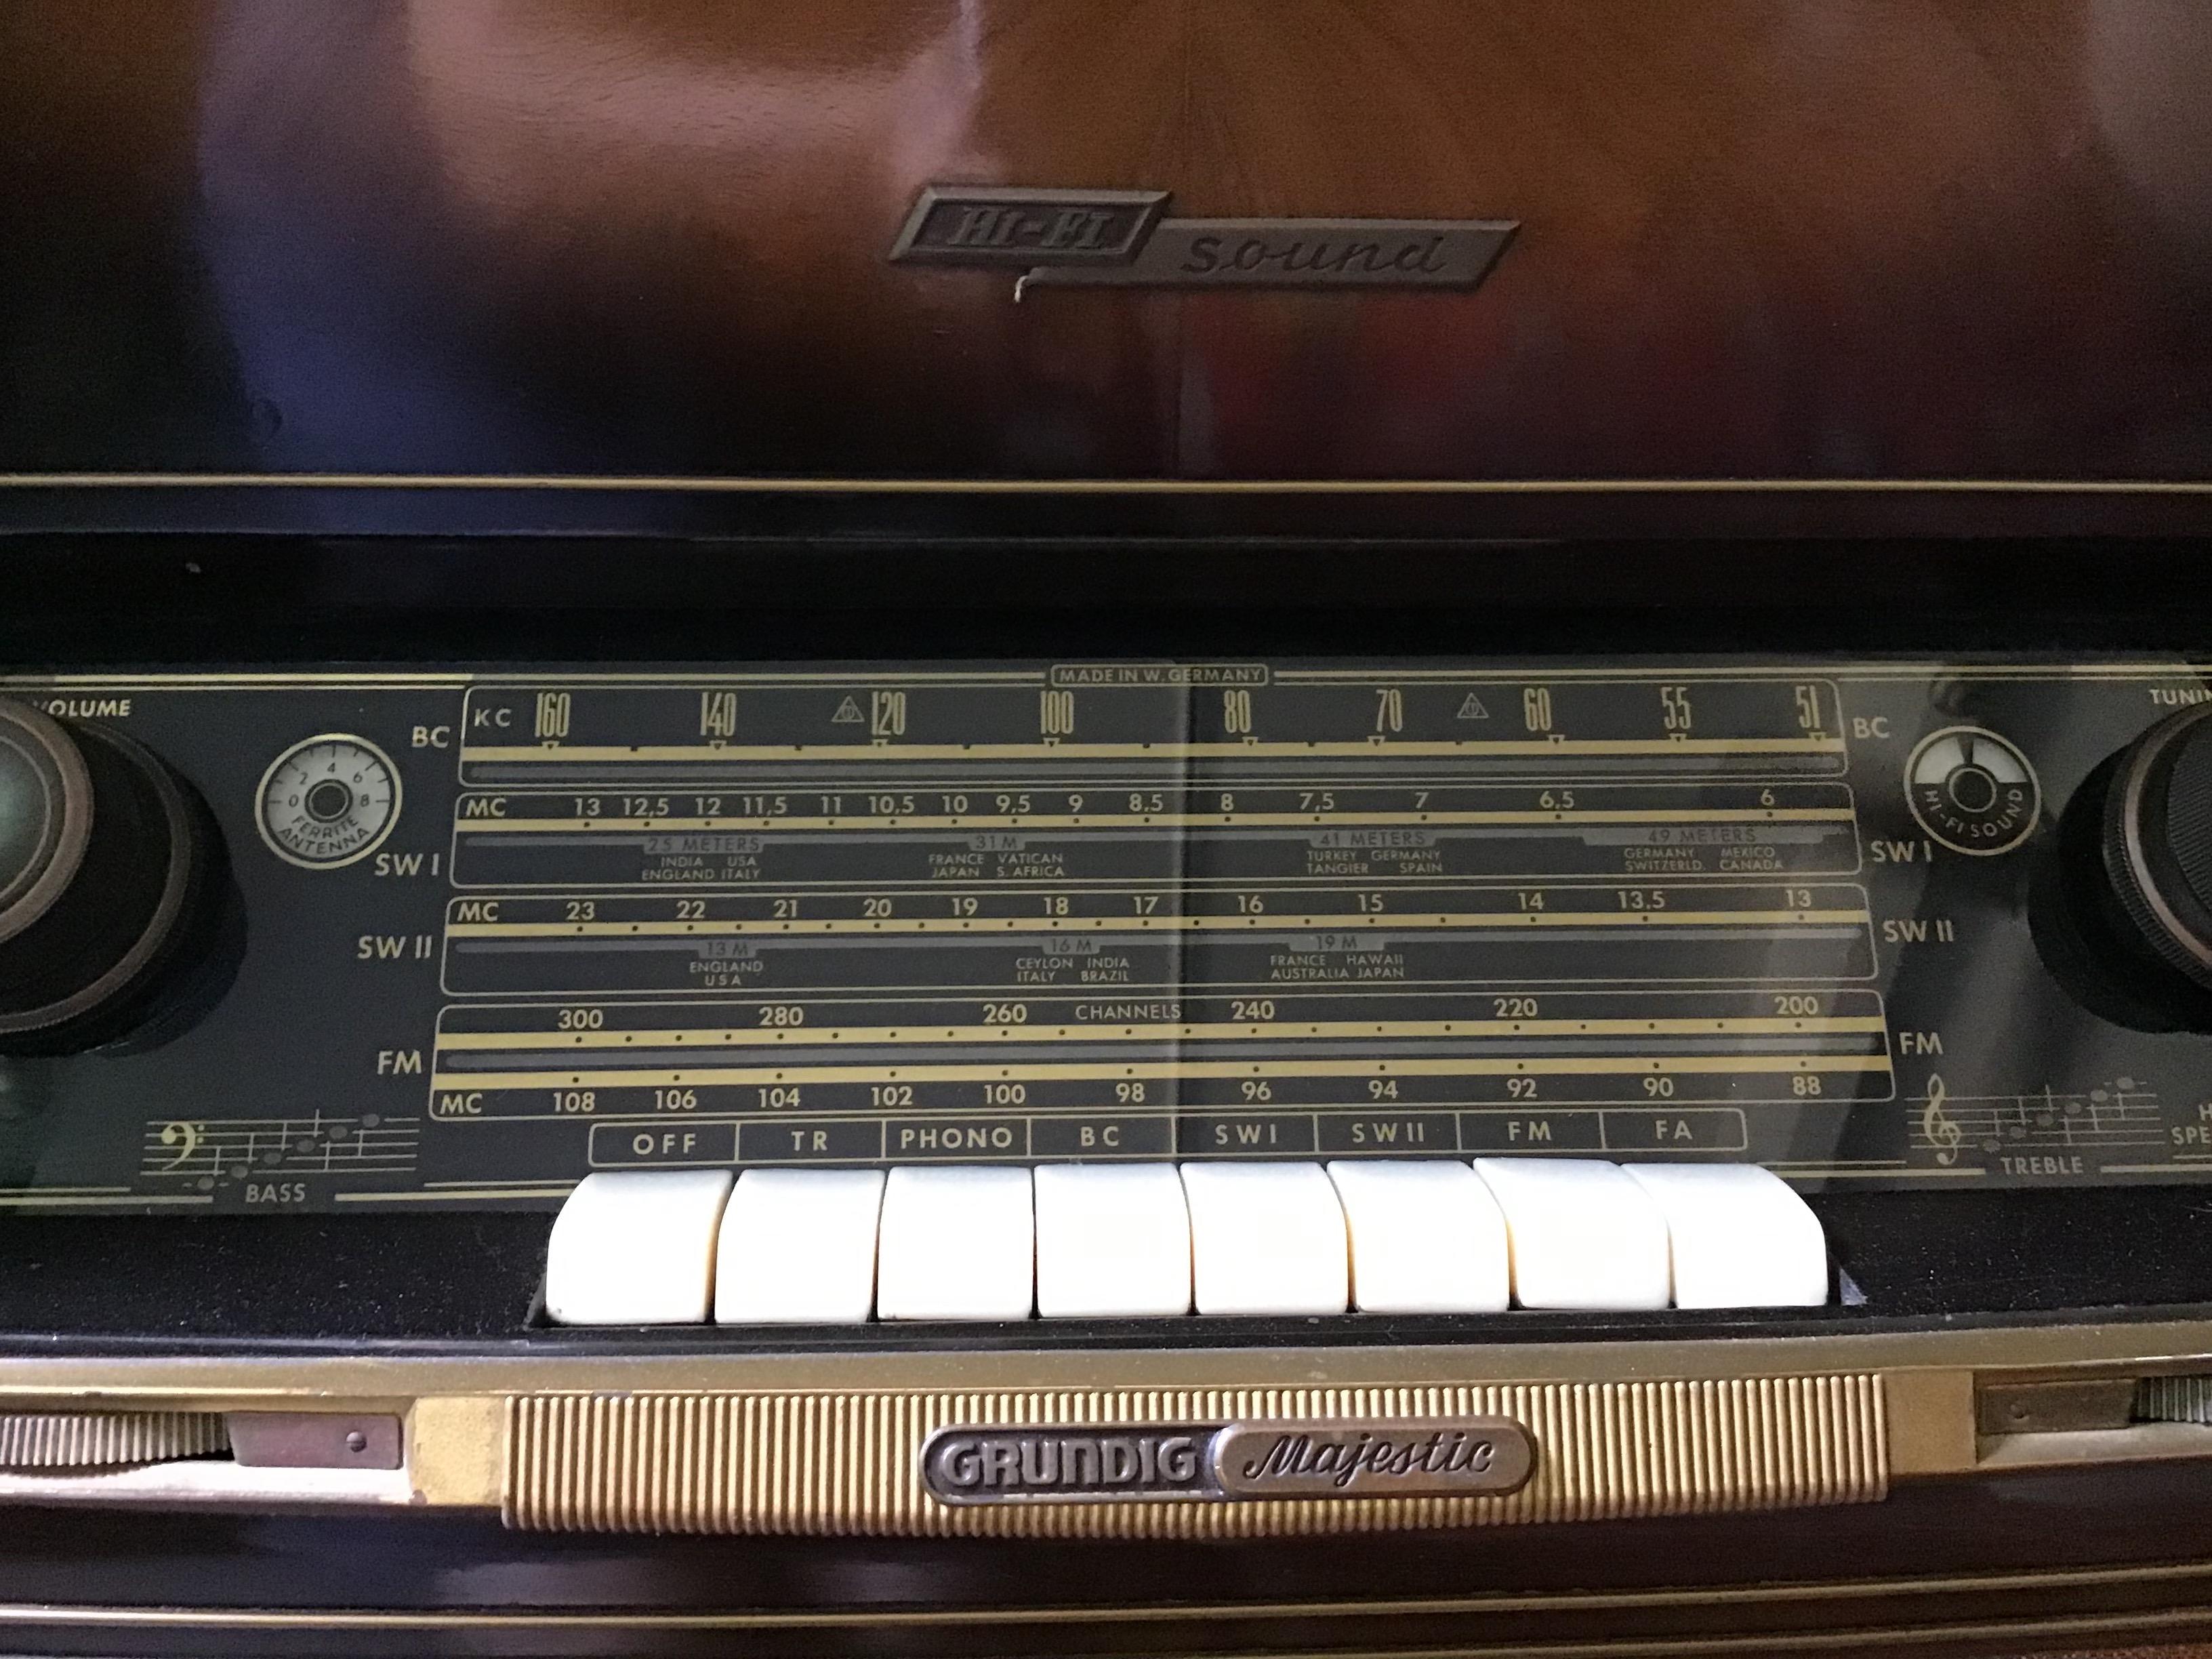 Grundig Majestic du milieu du siècle, console stéréo vintage à tubes en état de marche avec tourne-disque et ondes courtes.
L'appareil est en état de marche avec les tubes d'origine. Branchez-le et écoutez la radio.
Le tourne-disque a besoin d'une